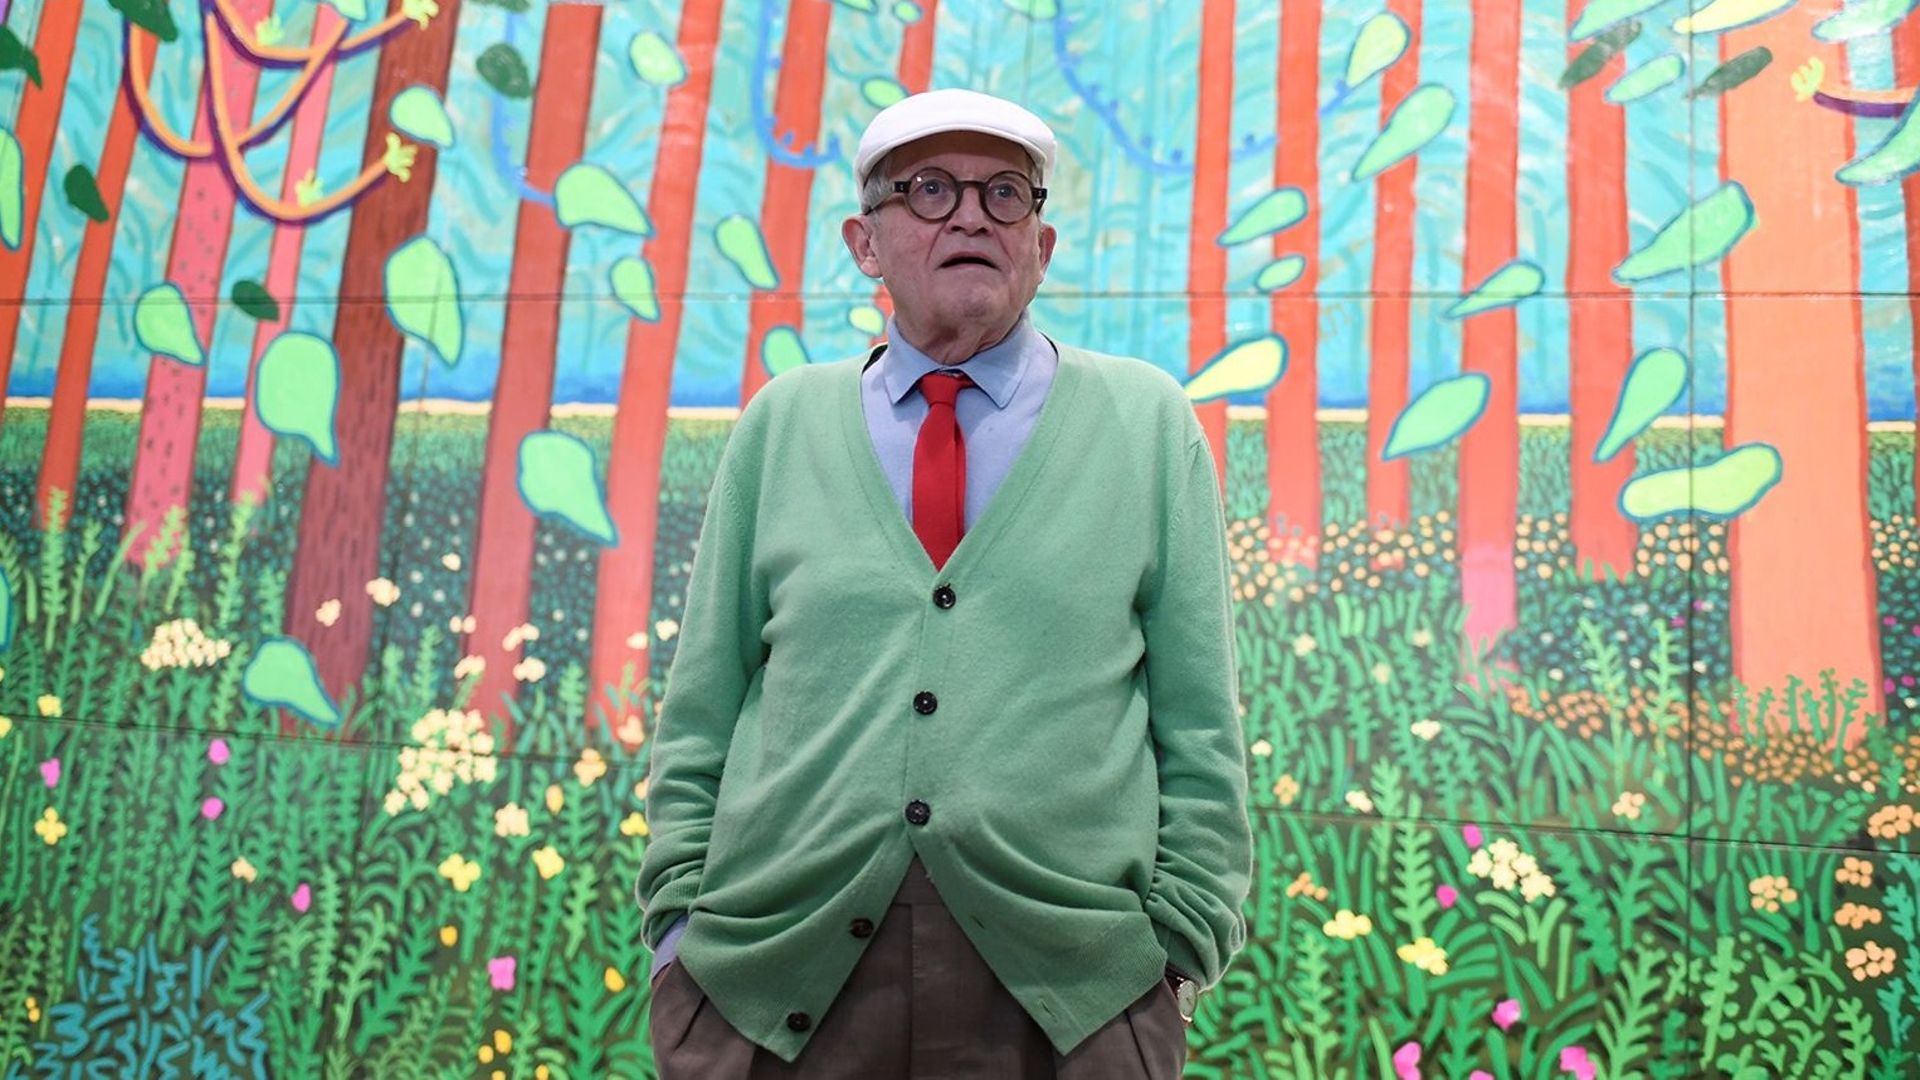 L'oeuvre de David Hockney sera exposée dans le Forum du Centre Pompidou dès mercredi et jusqu'au 23 octobre, date à laquelle se termine sa rétrospective